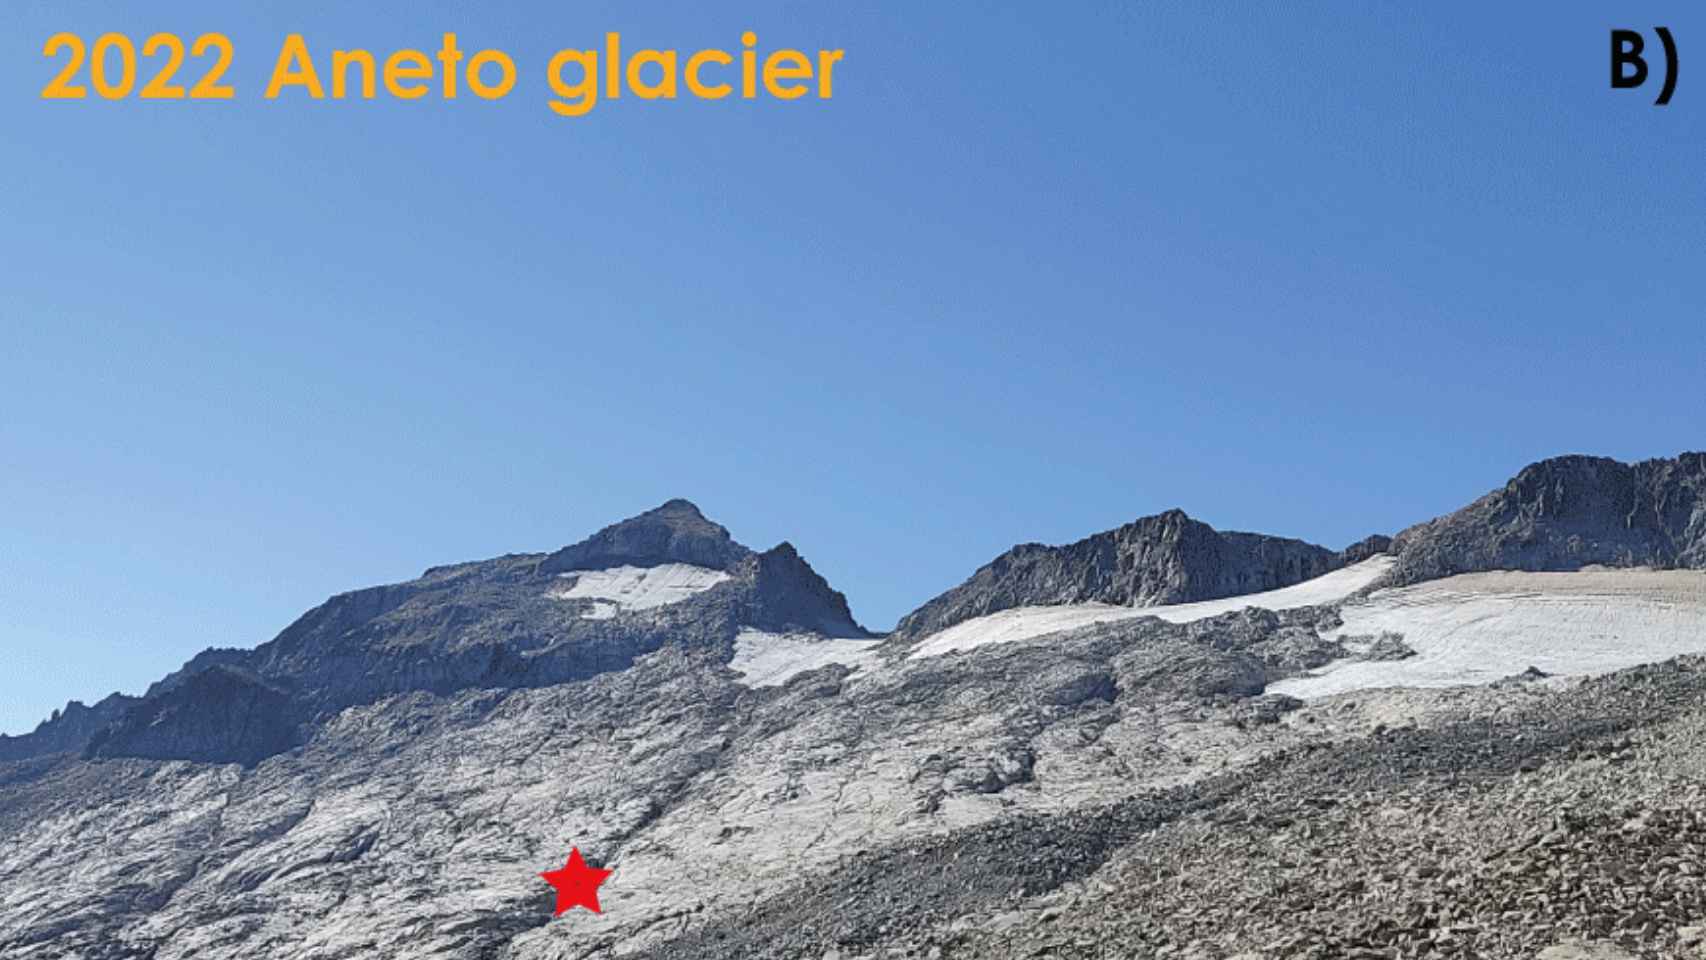 El glaciar Aneto en 2022, con el mismo punto de referencia.